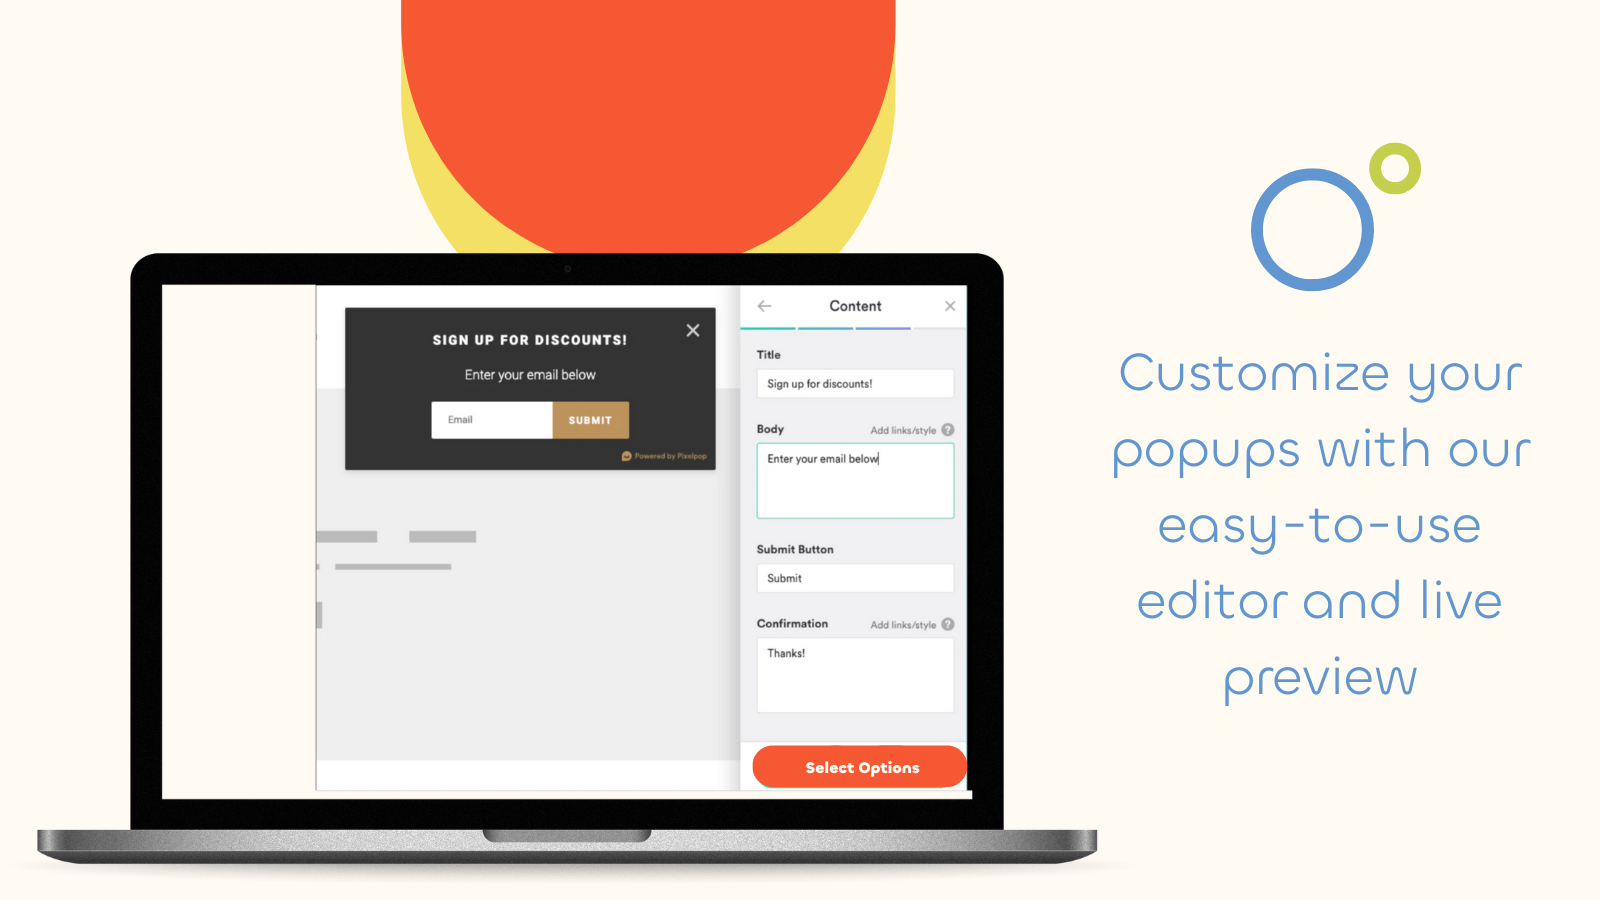 Personalize seus popups com nosso editor e visualização ao vivo